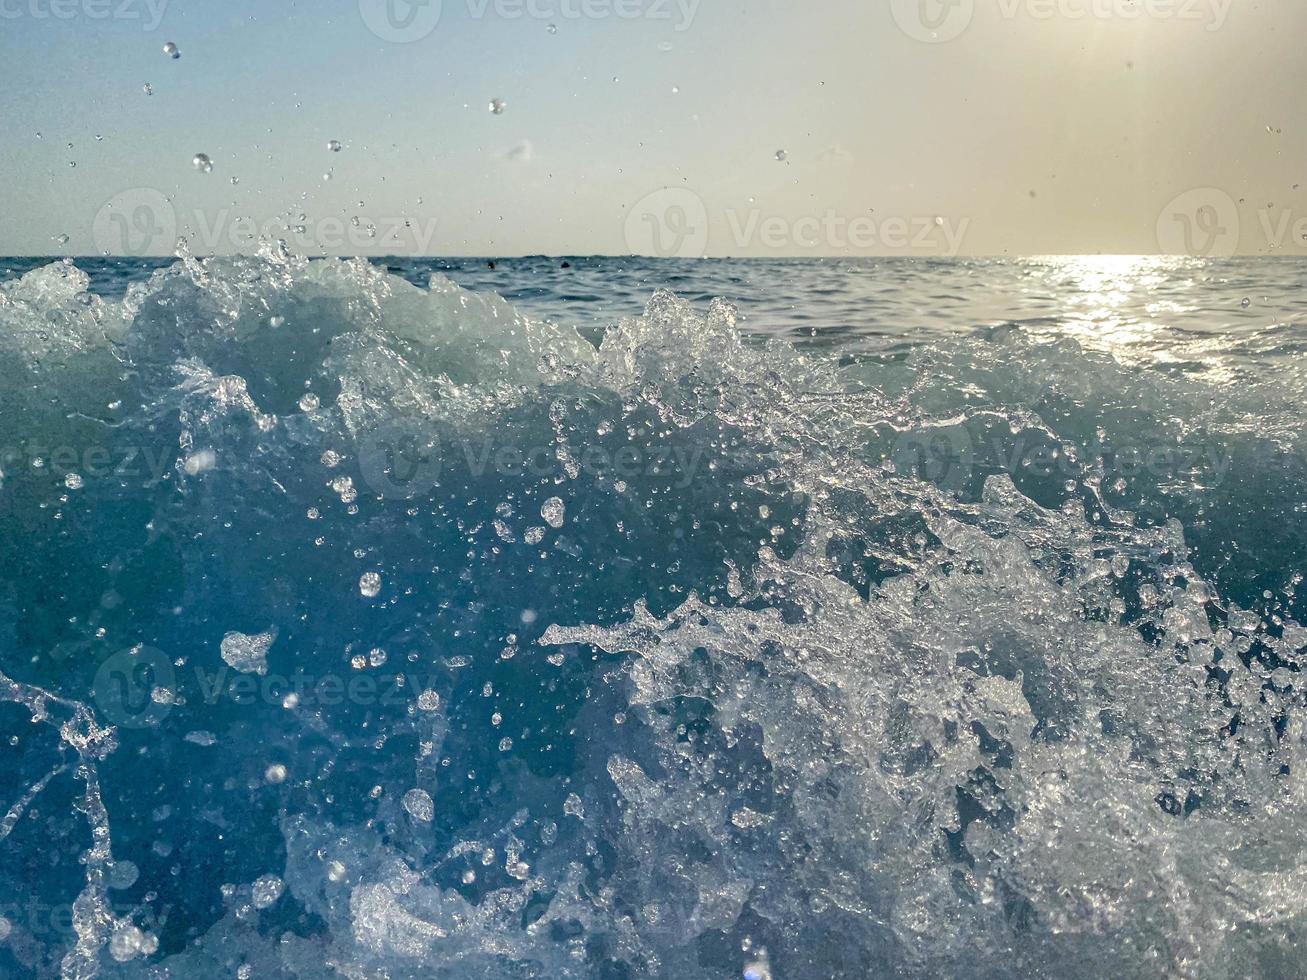 ondas, salpicos de água na praia no mar de férias em um resort turístico paradisíaco do sul do país tropical oriental quente de férias. o fundo foto